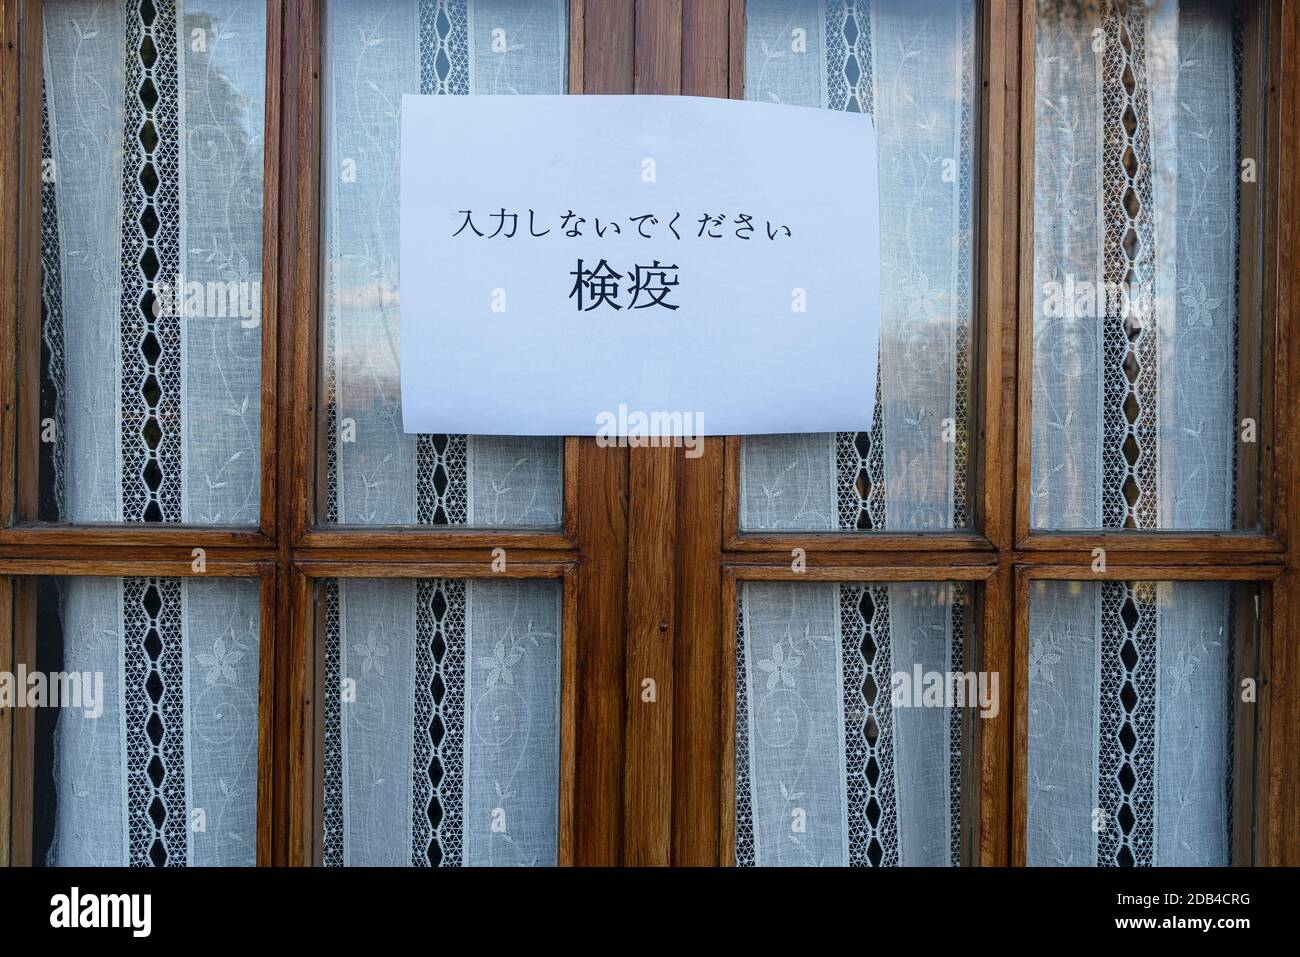 Lenguaje de señas japonés fotografías e imágenes de alta resolución -  Página 2 - Alamy